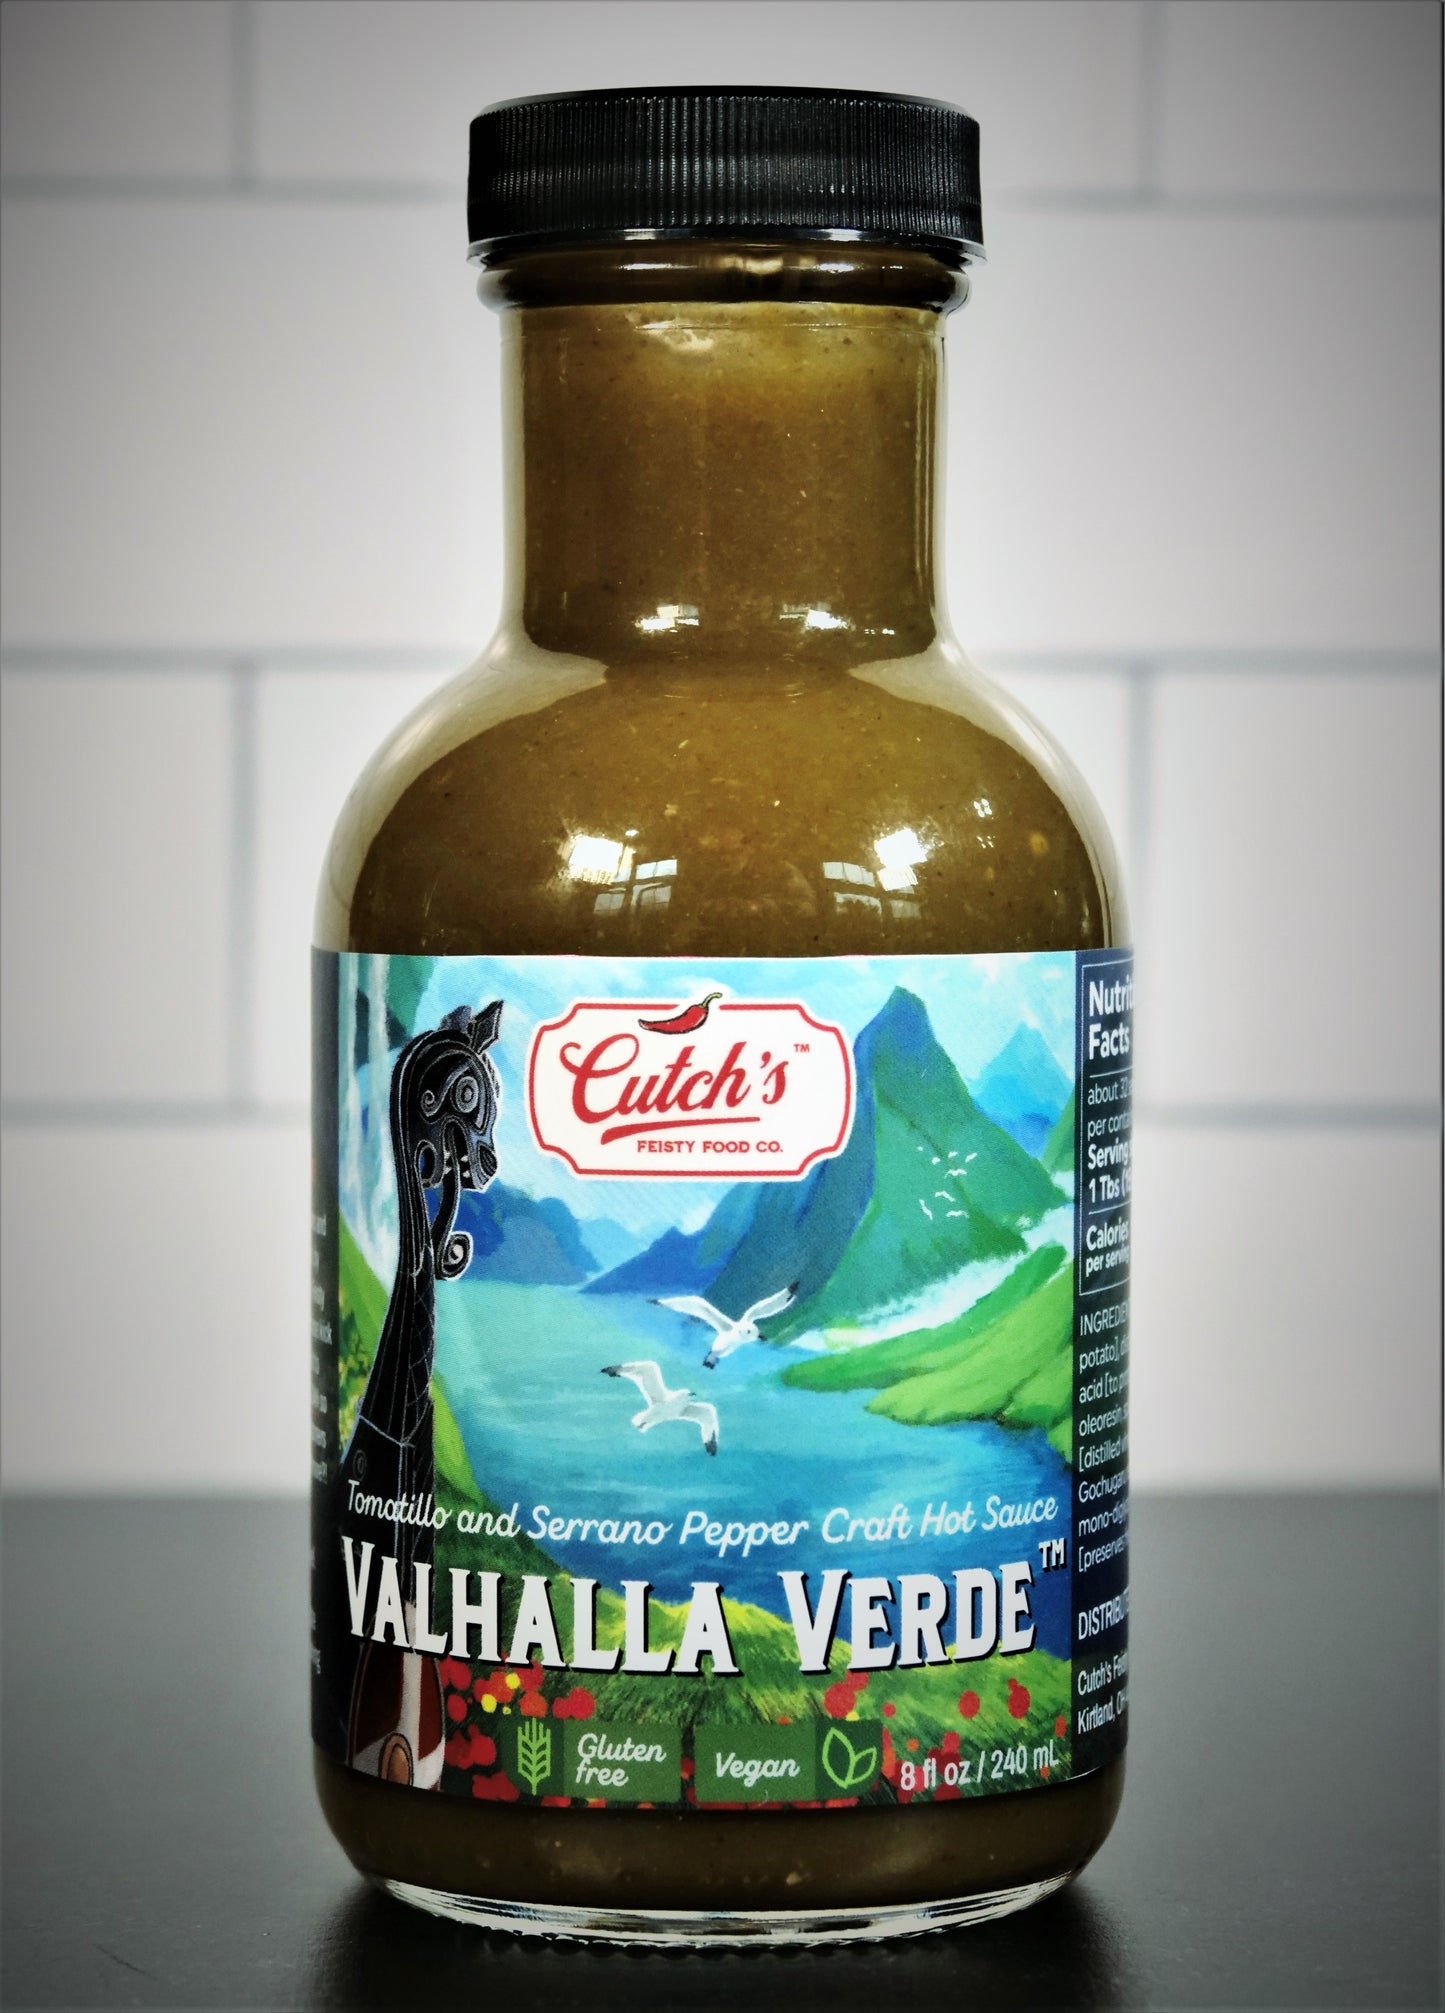 Cutch's Valhalla Verde